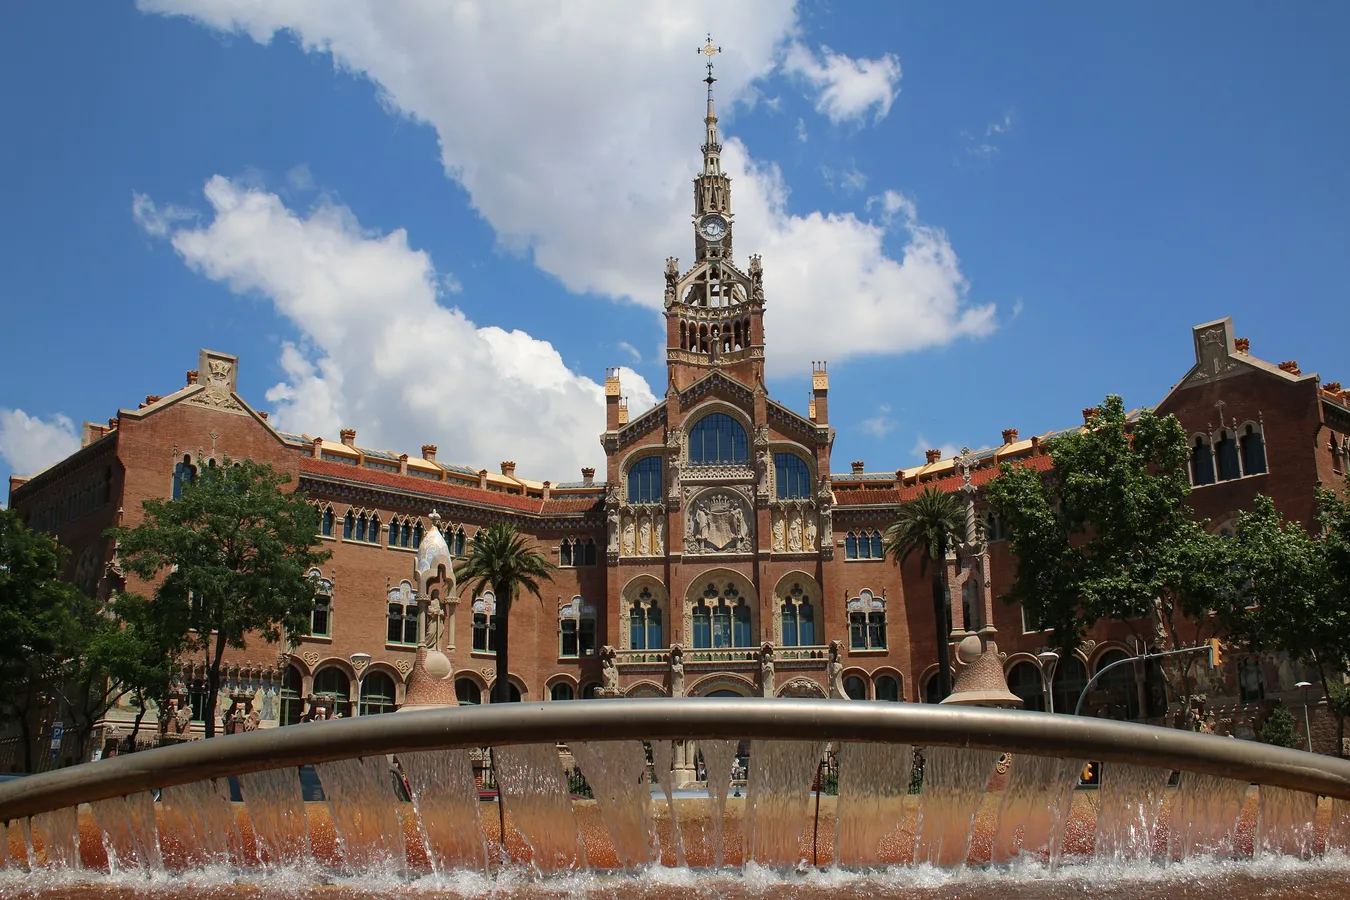 Imagen de Recinto Modernista de Santa Creu y Sant Pau: El antiguo hospital convertido en hito artístico de Barcelona